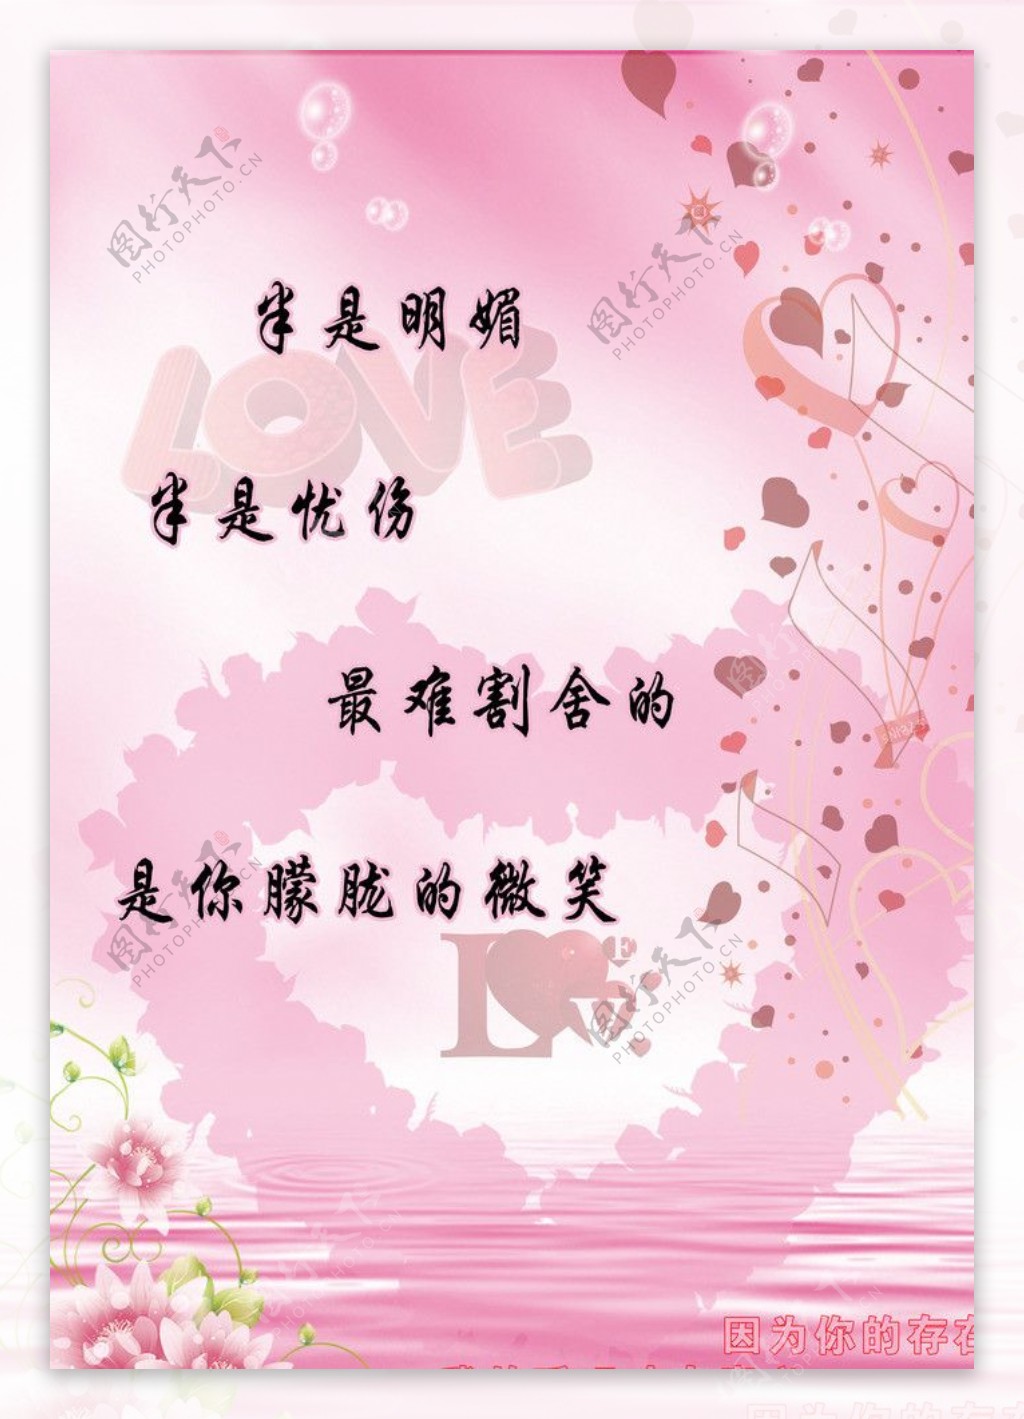 上海科学技术职业学院我院商贸管理学院举办樱花三行情书活动